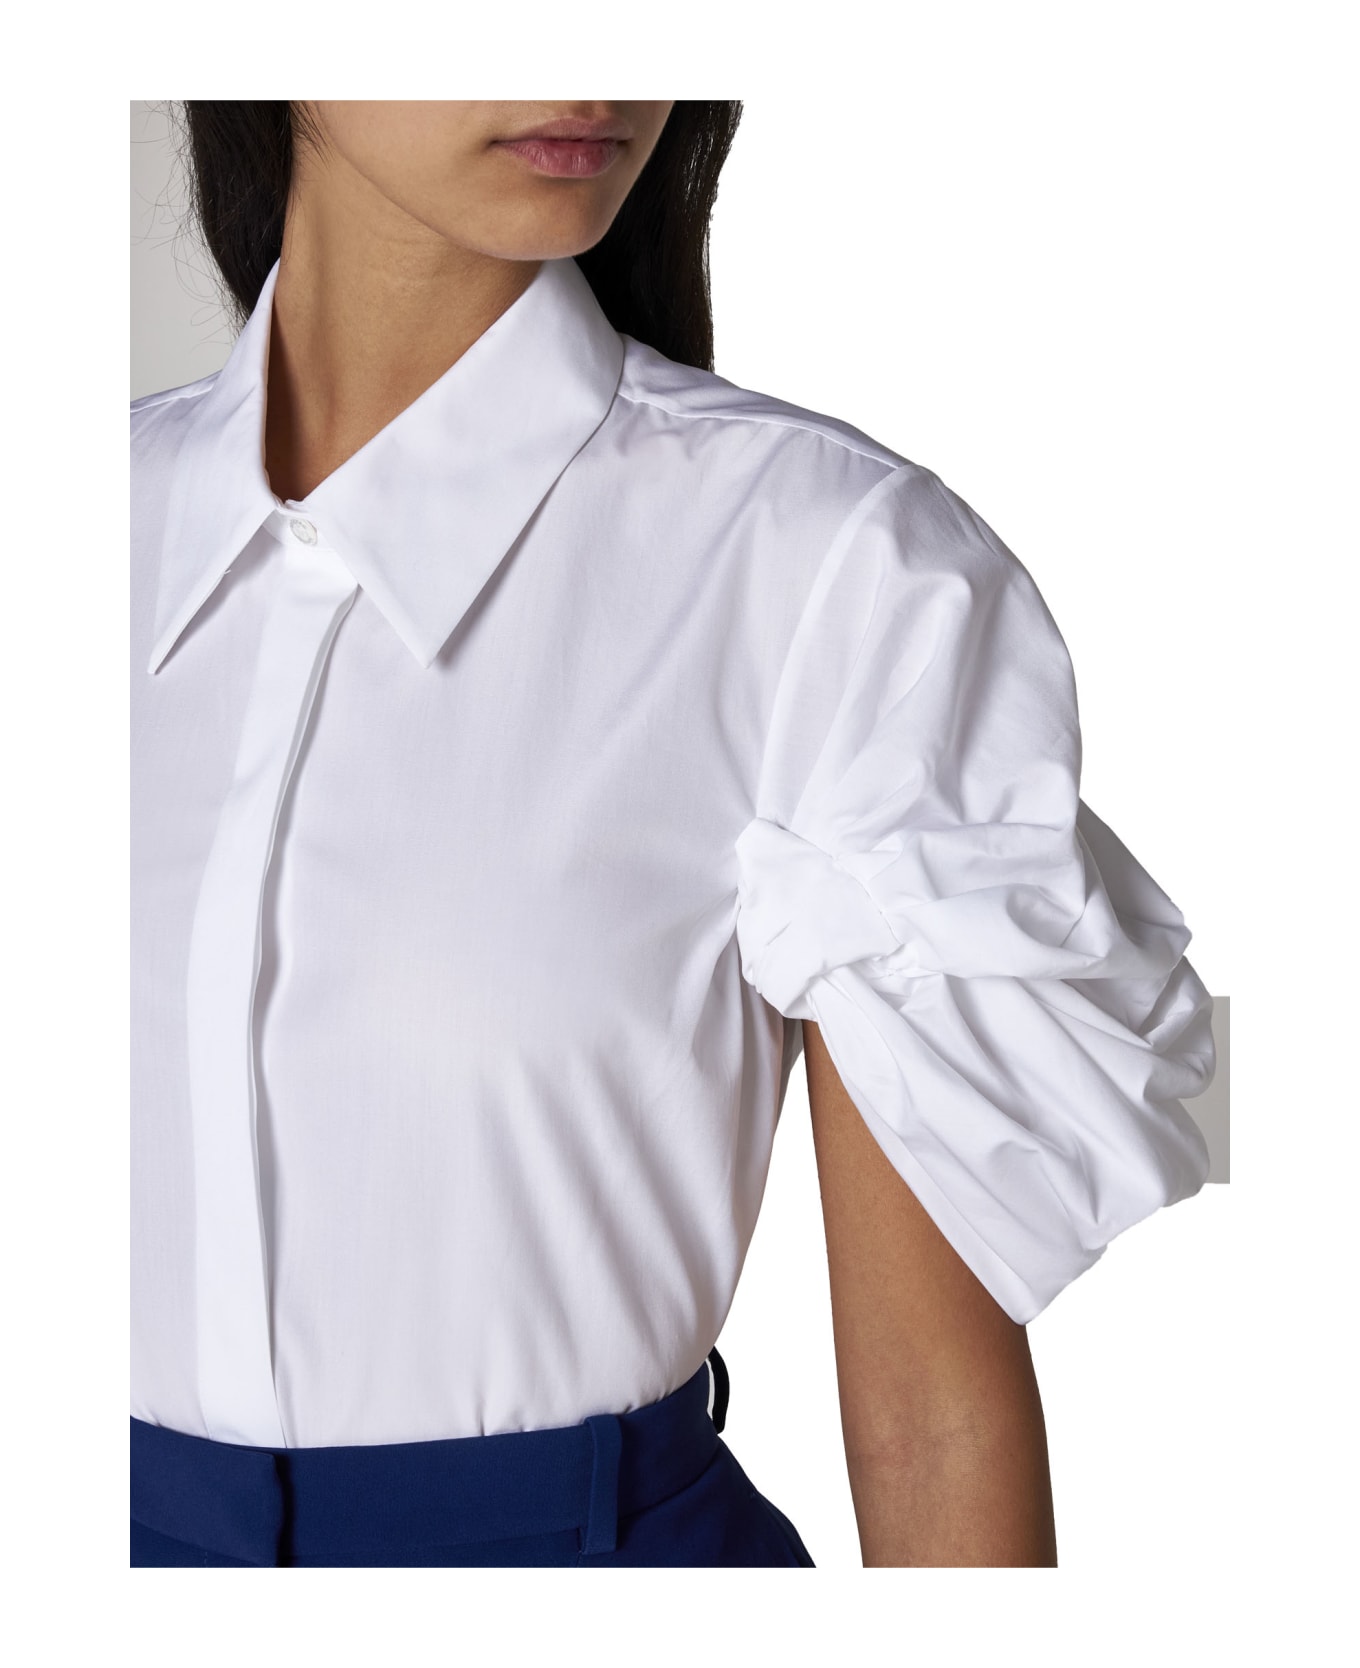 Alexander McQueen Short Sleeve Cotton Shirt - Optical White